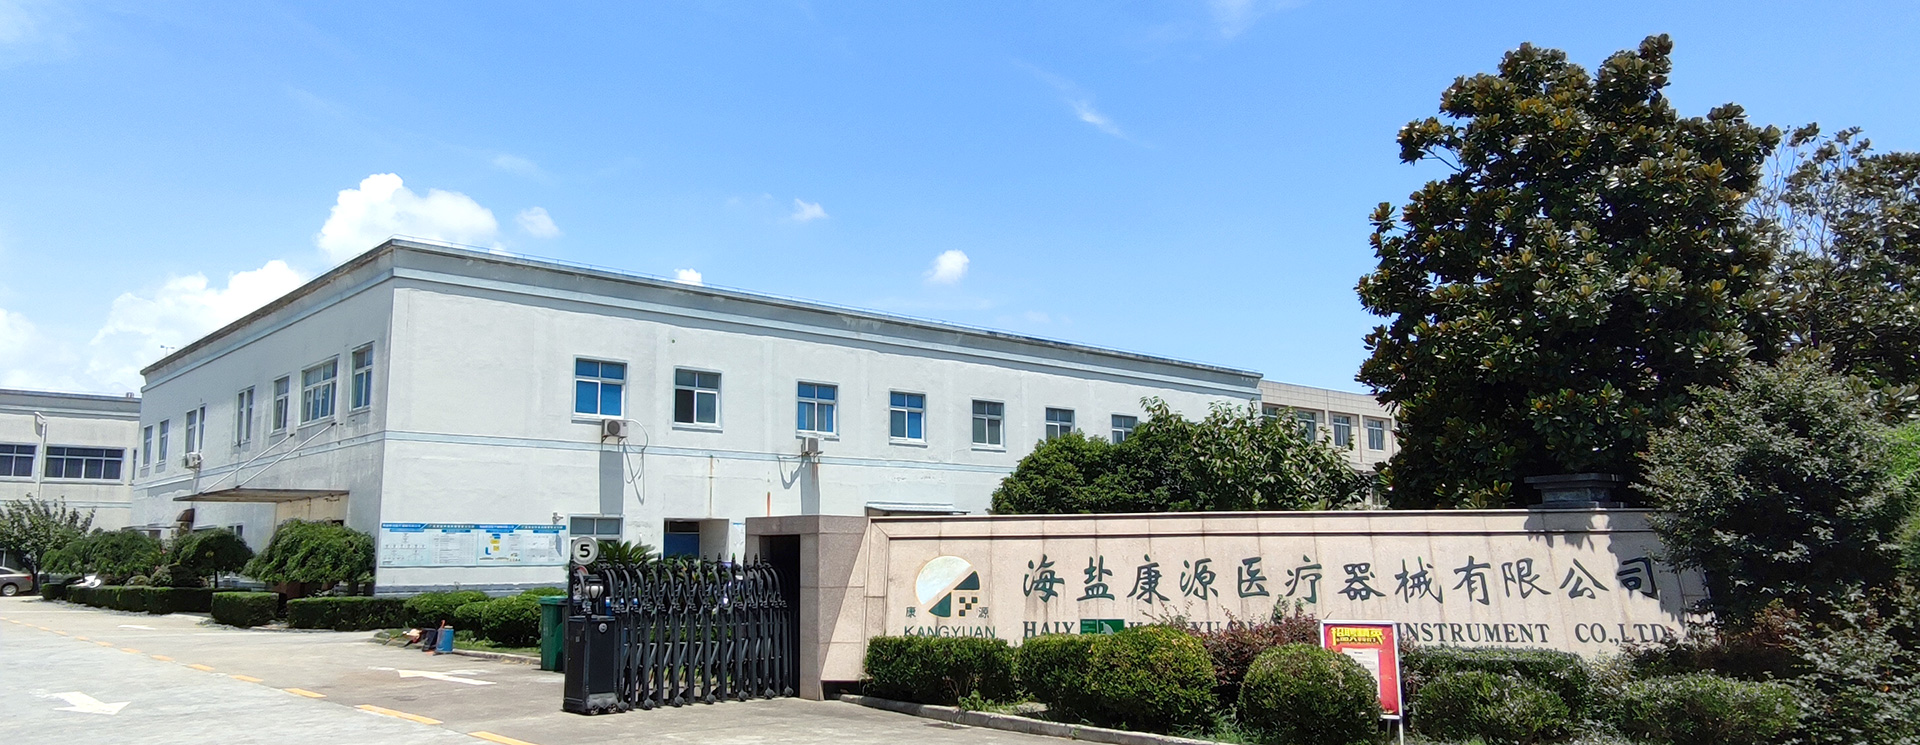 Haiyan Kangyuan Medical Instrument Co., Ltd.